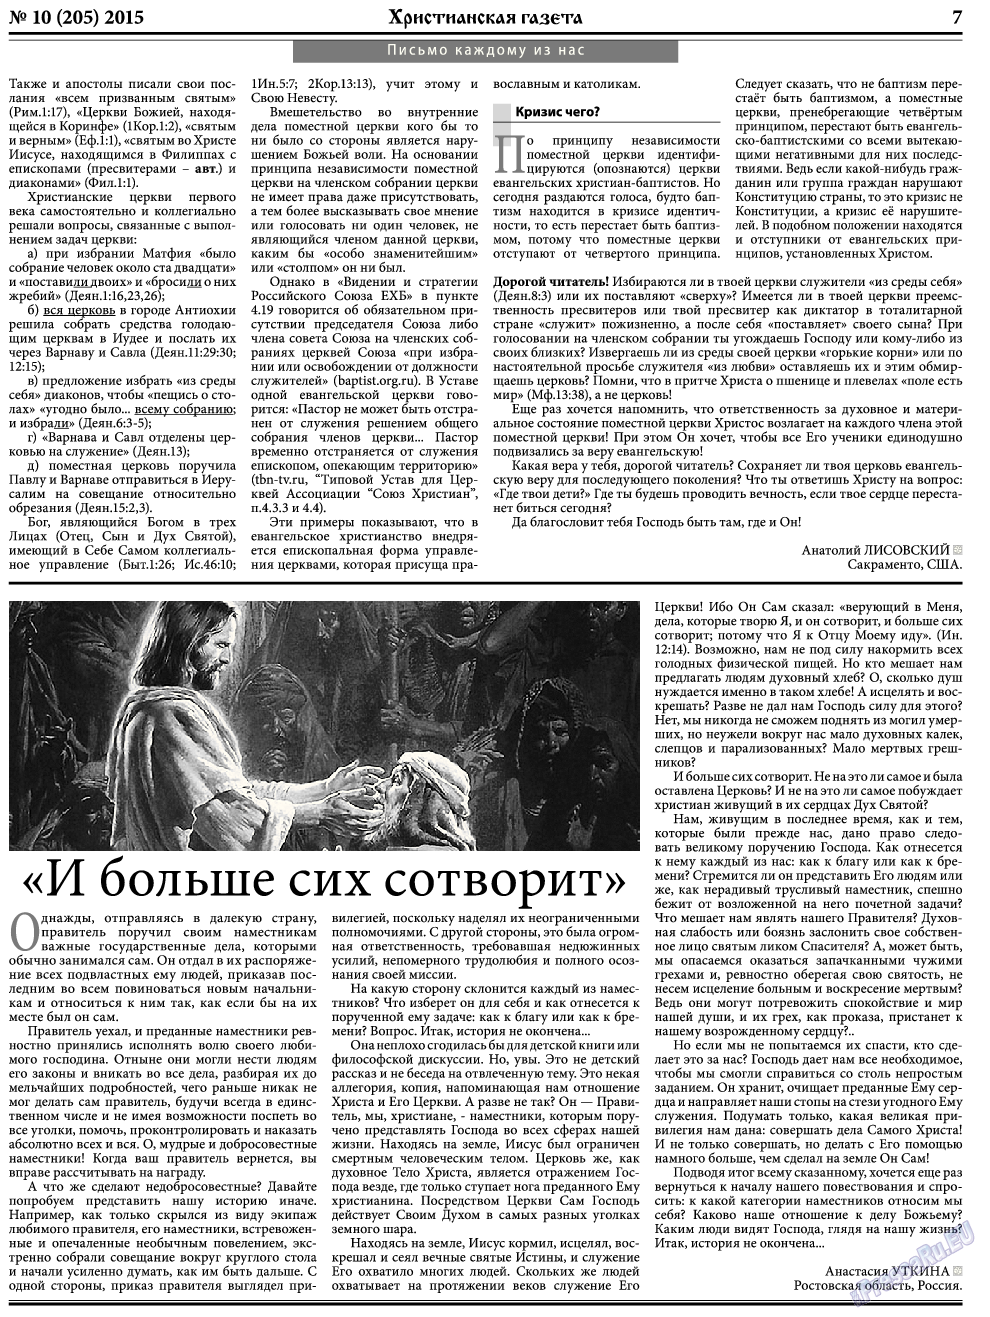 Христианская газета, газета. 2015 №10 стр.7